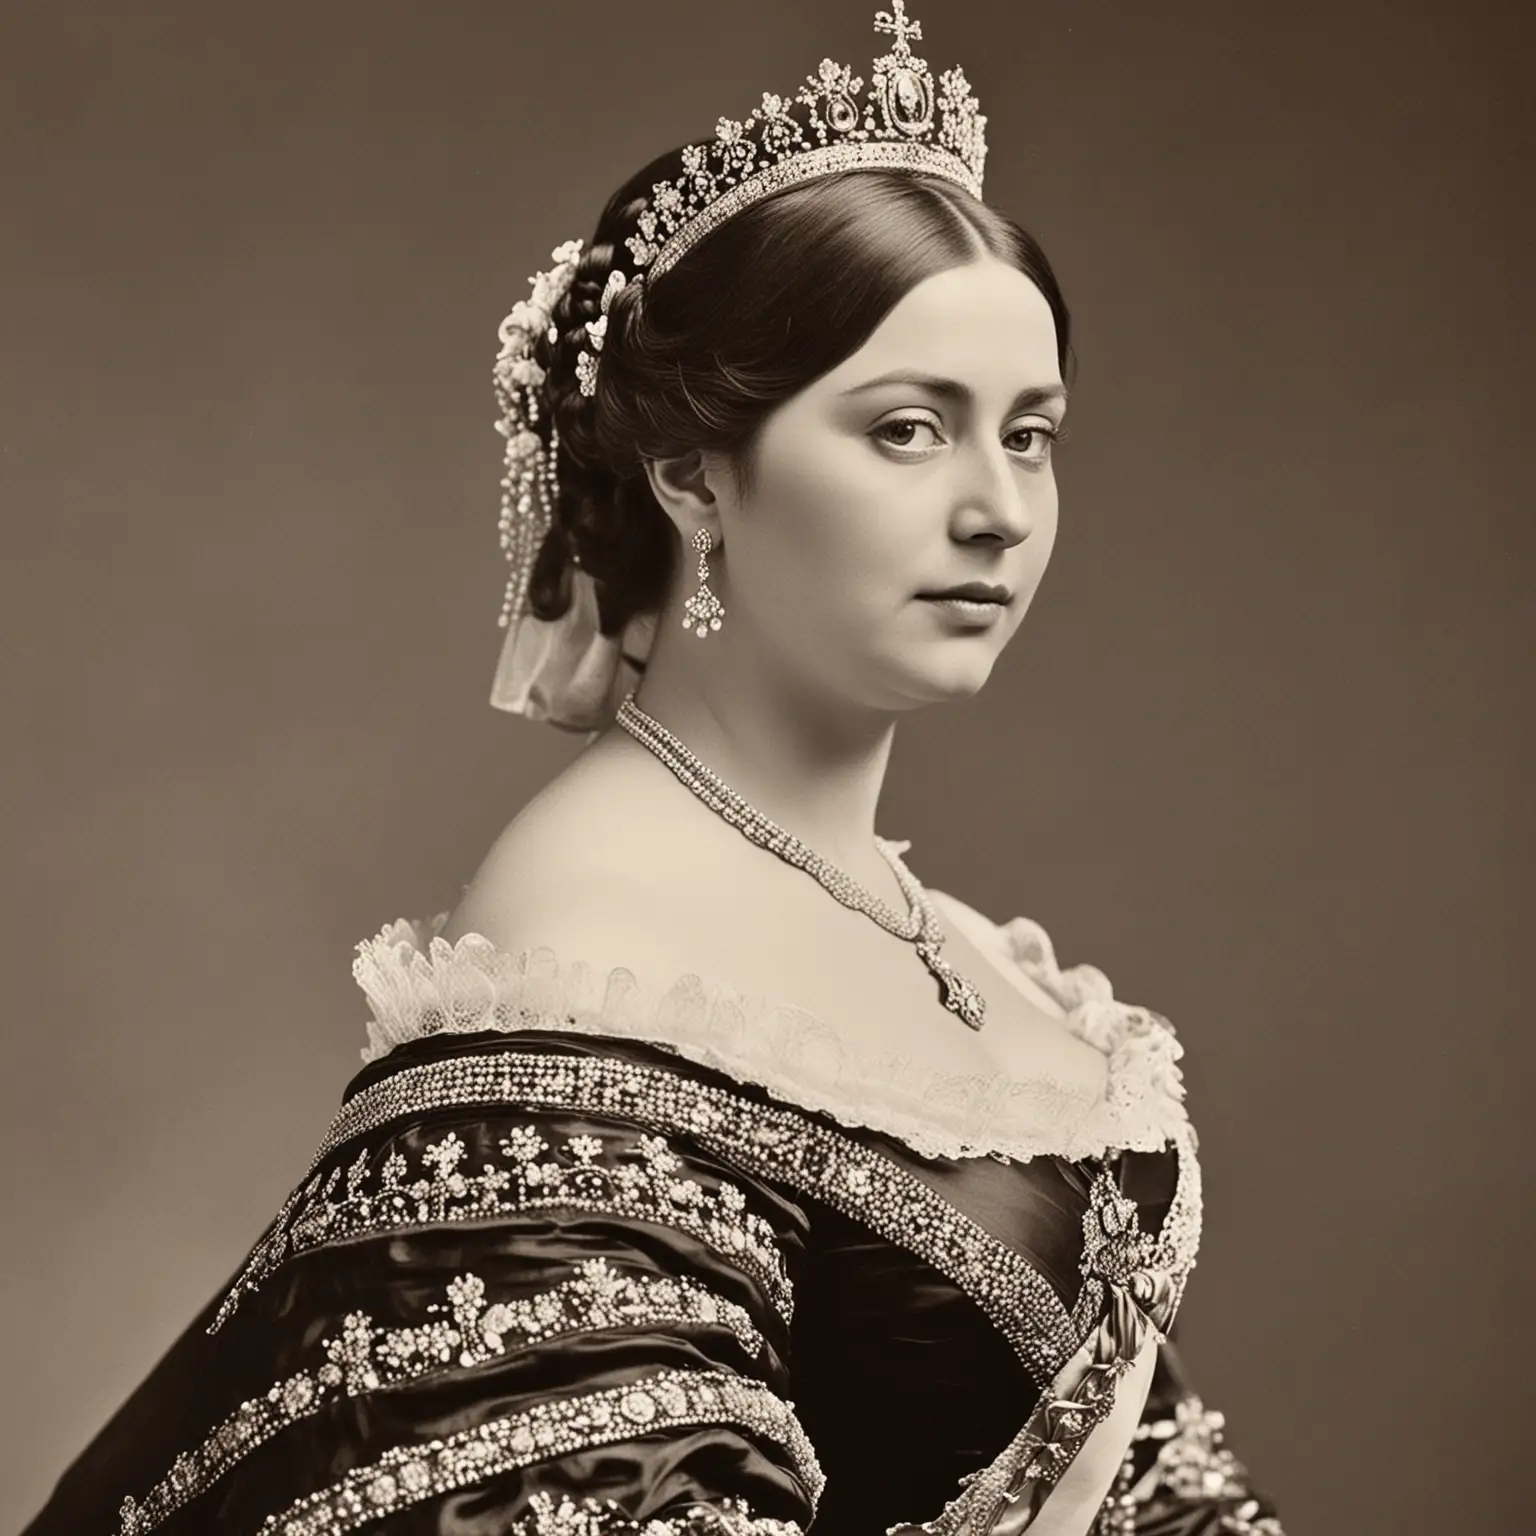 DAME UNA IMGEN REAL COMO TOMADA CON UNA CAMARA PROFECIONAL.: La Reina Victoria, nacida Alejandrina Victoria el 24 de mayo de 1819 en 